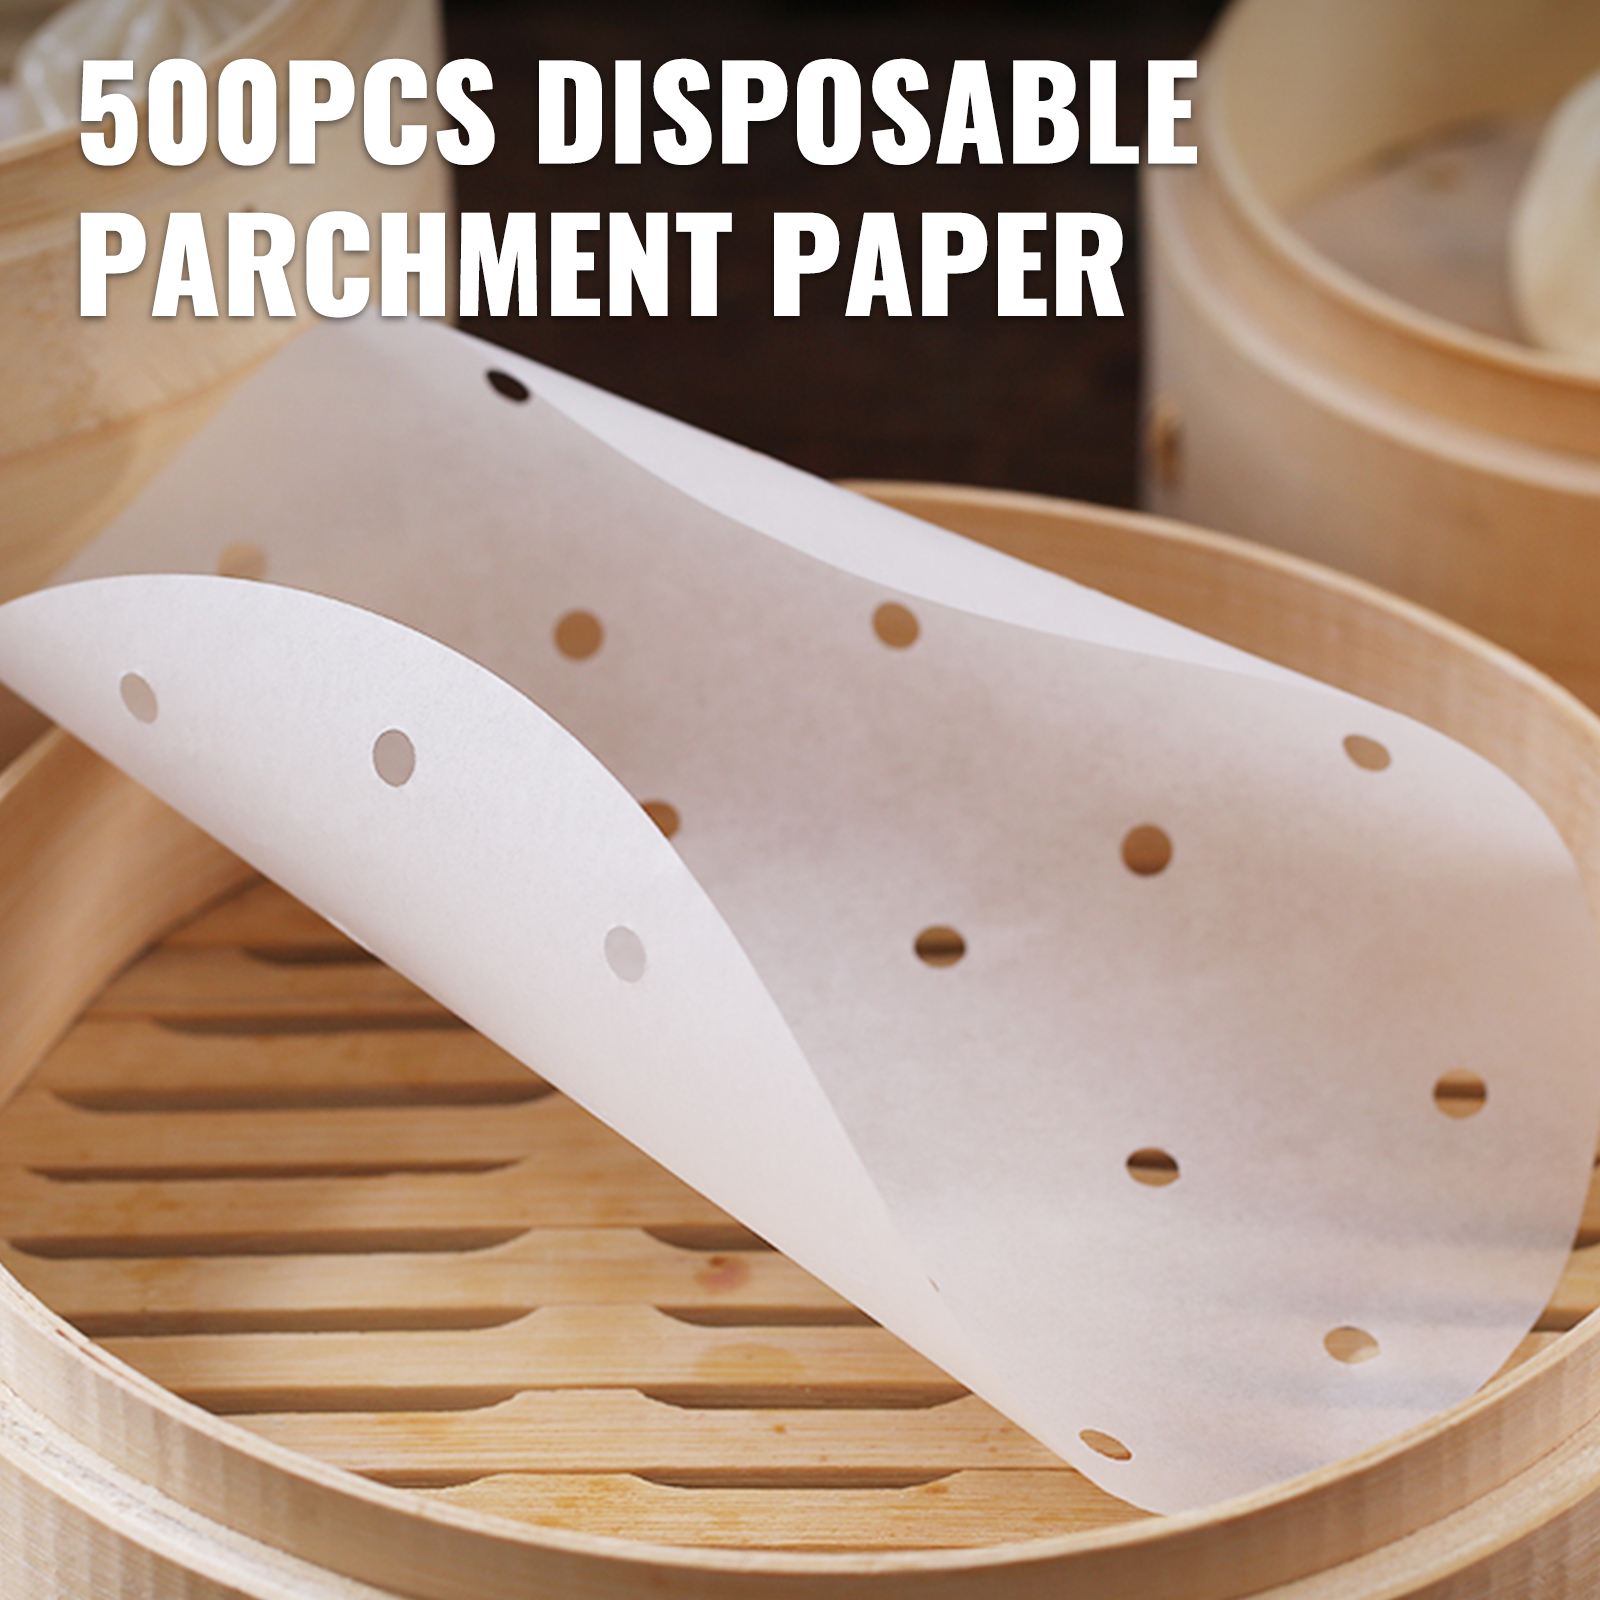 125 PCS Air Fryer Disposable Paper Liners Non-stick Parchment Oil-proof  7.9inch